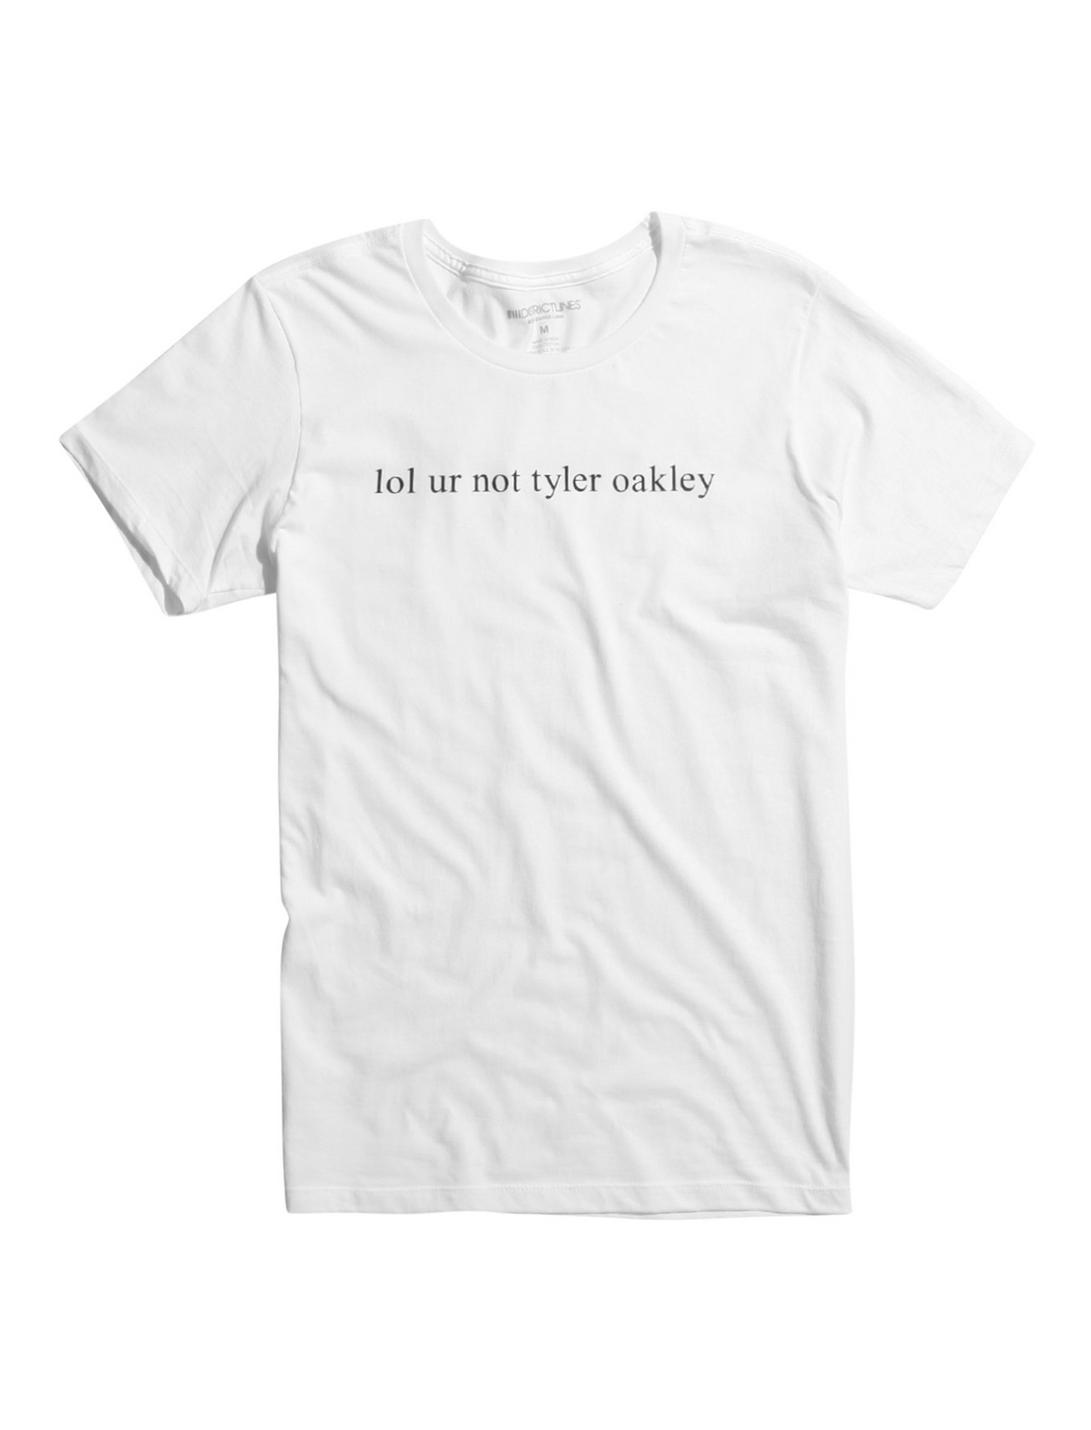 Tyler Oakley LOL White T-Shirt, MULTI, hi-res